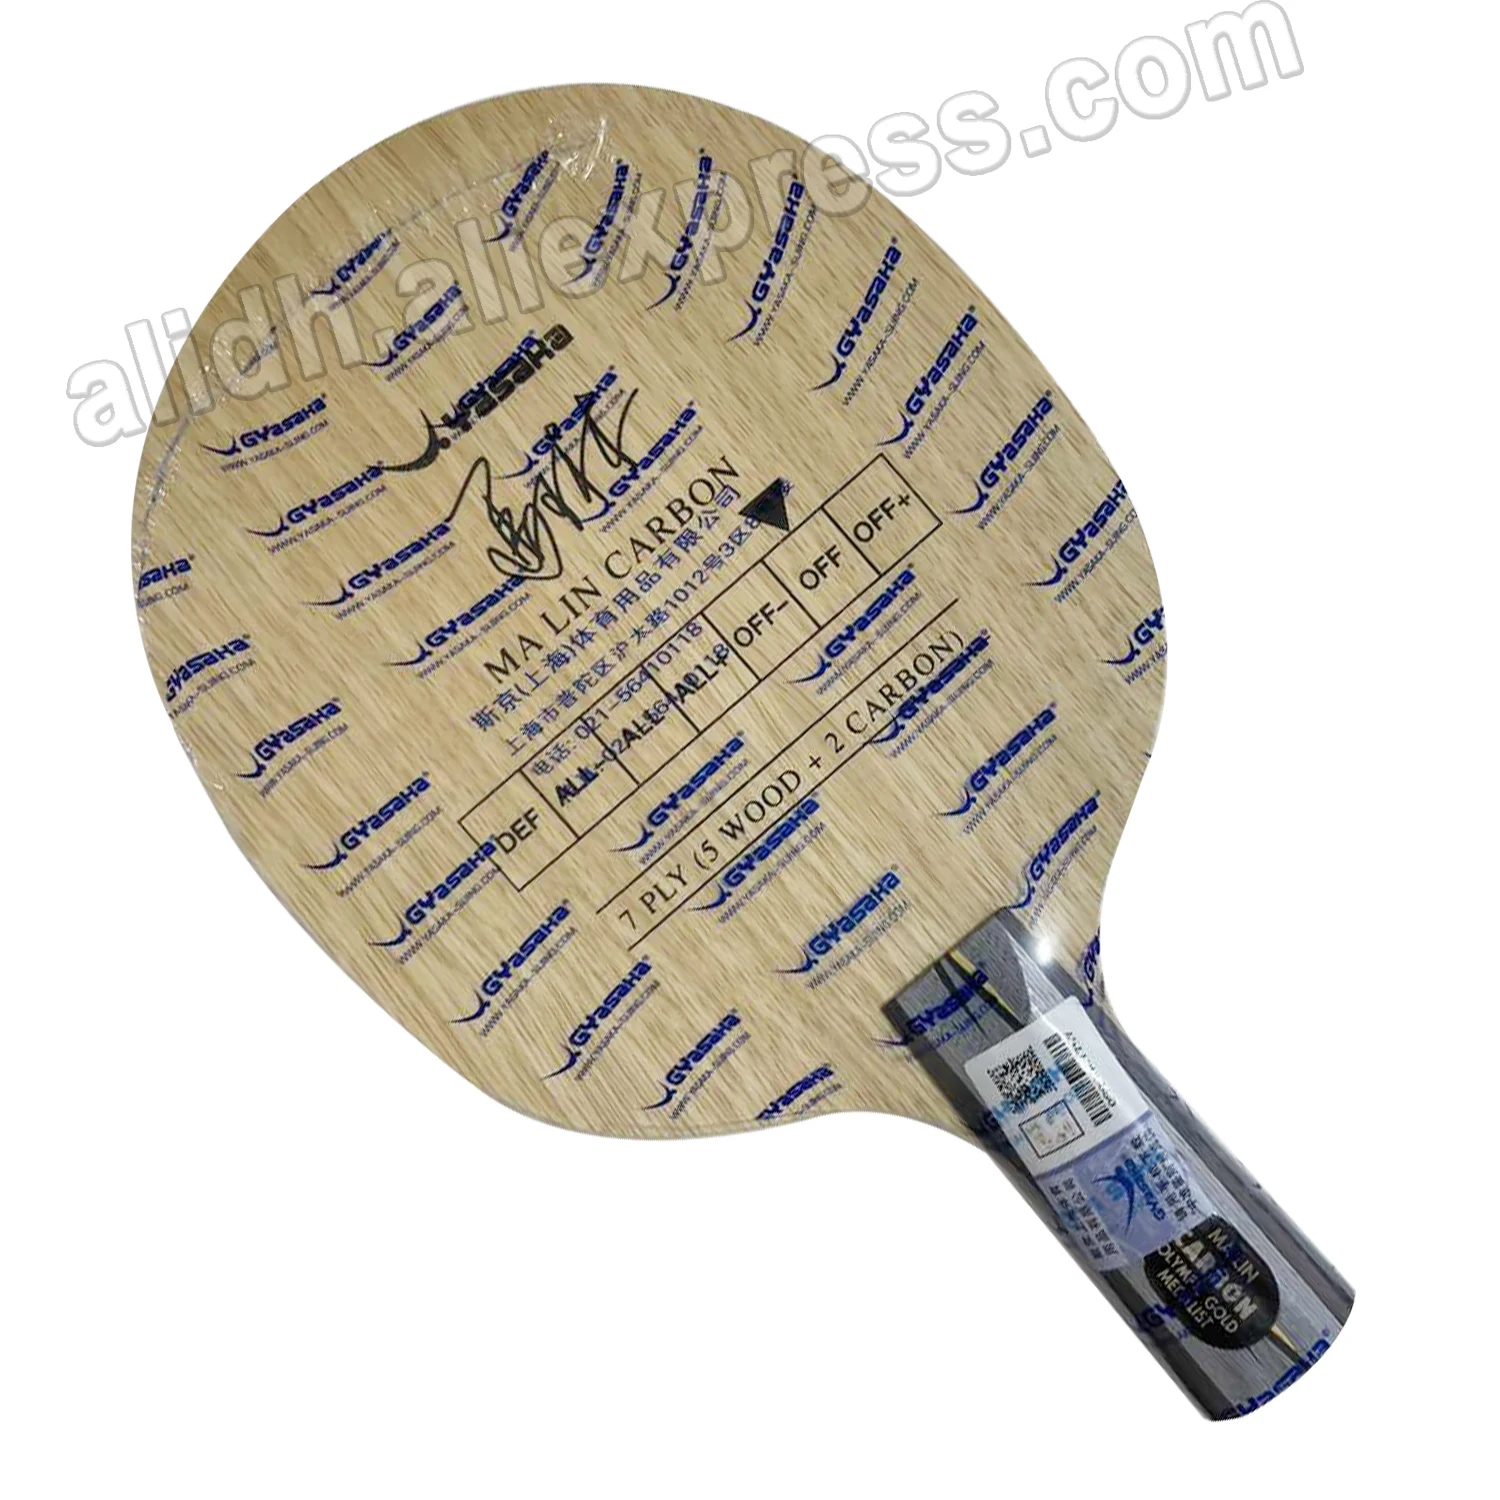 Оригинальная ракетка Yasaka YCA для настольного тенниса с лезвием, спортивные ракетки для настольного тенниса, ракетка yasaka для спортивной игры в настольный теннис, углеродные ракетки Изображение 0